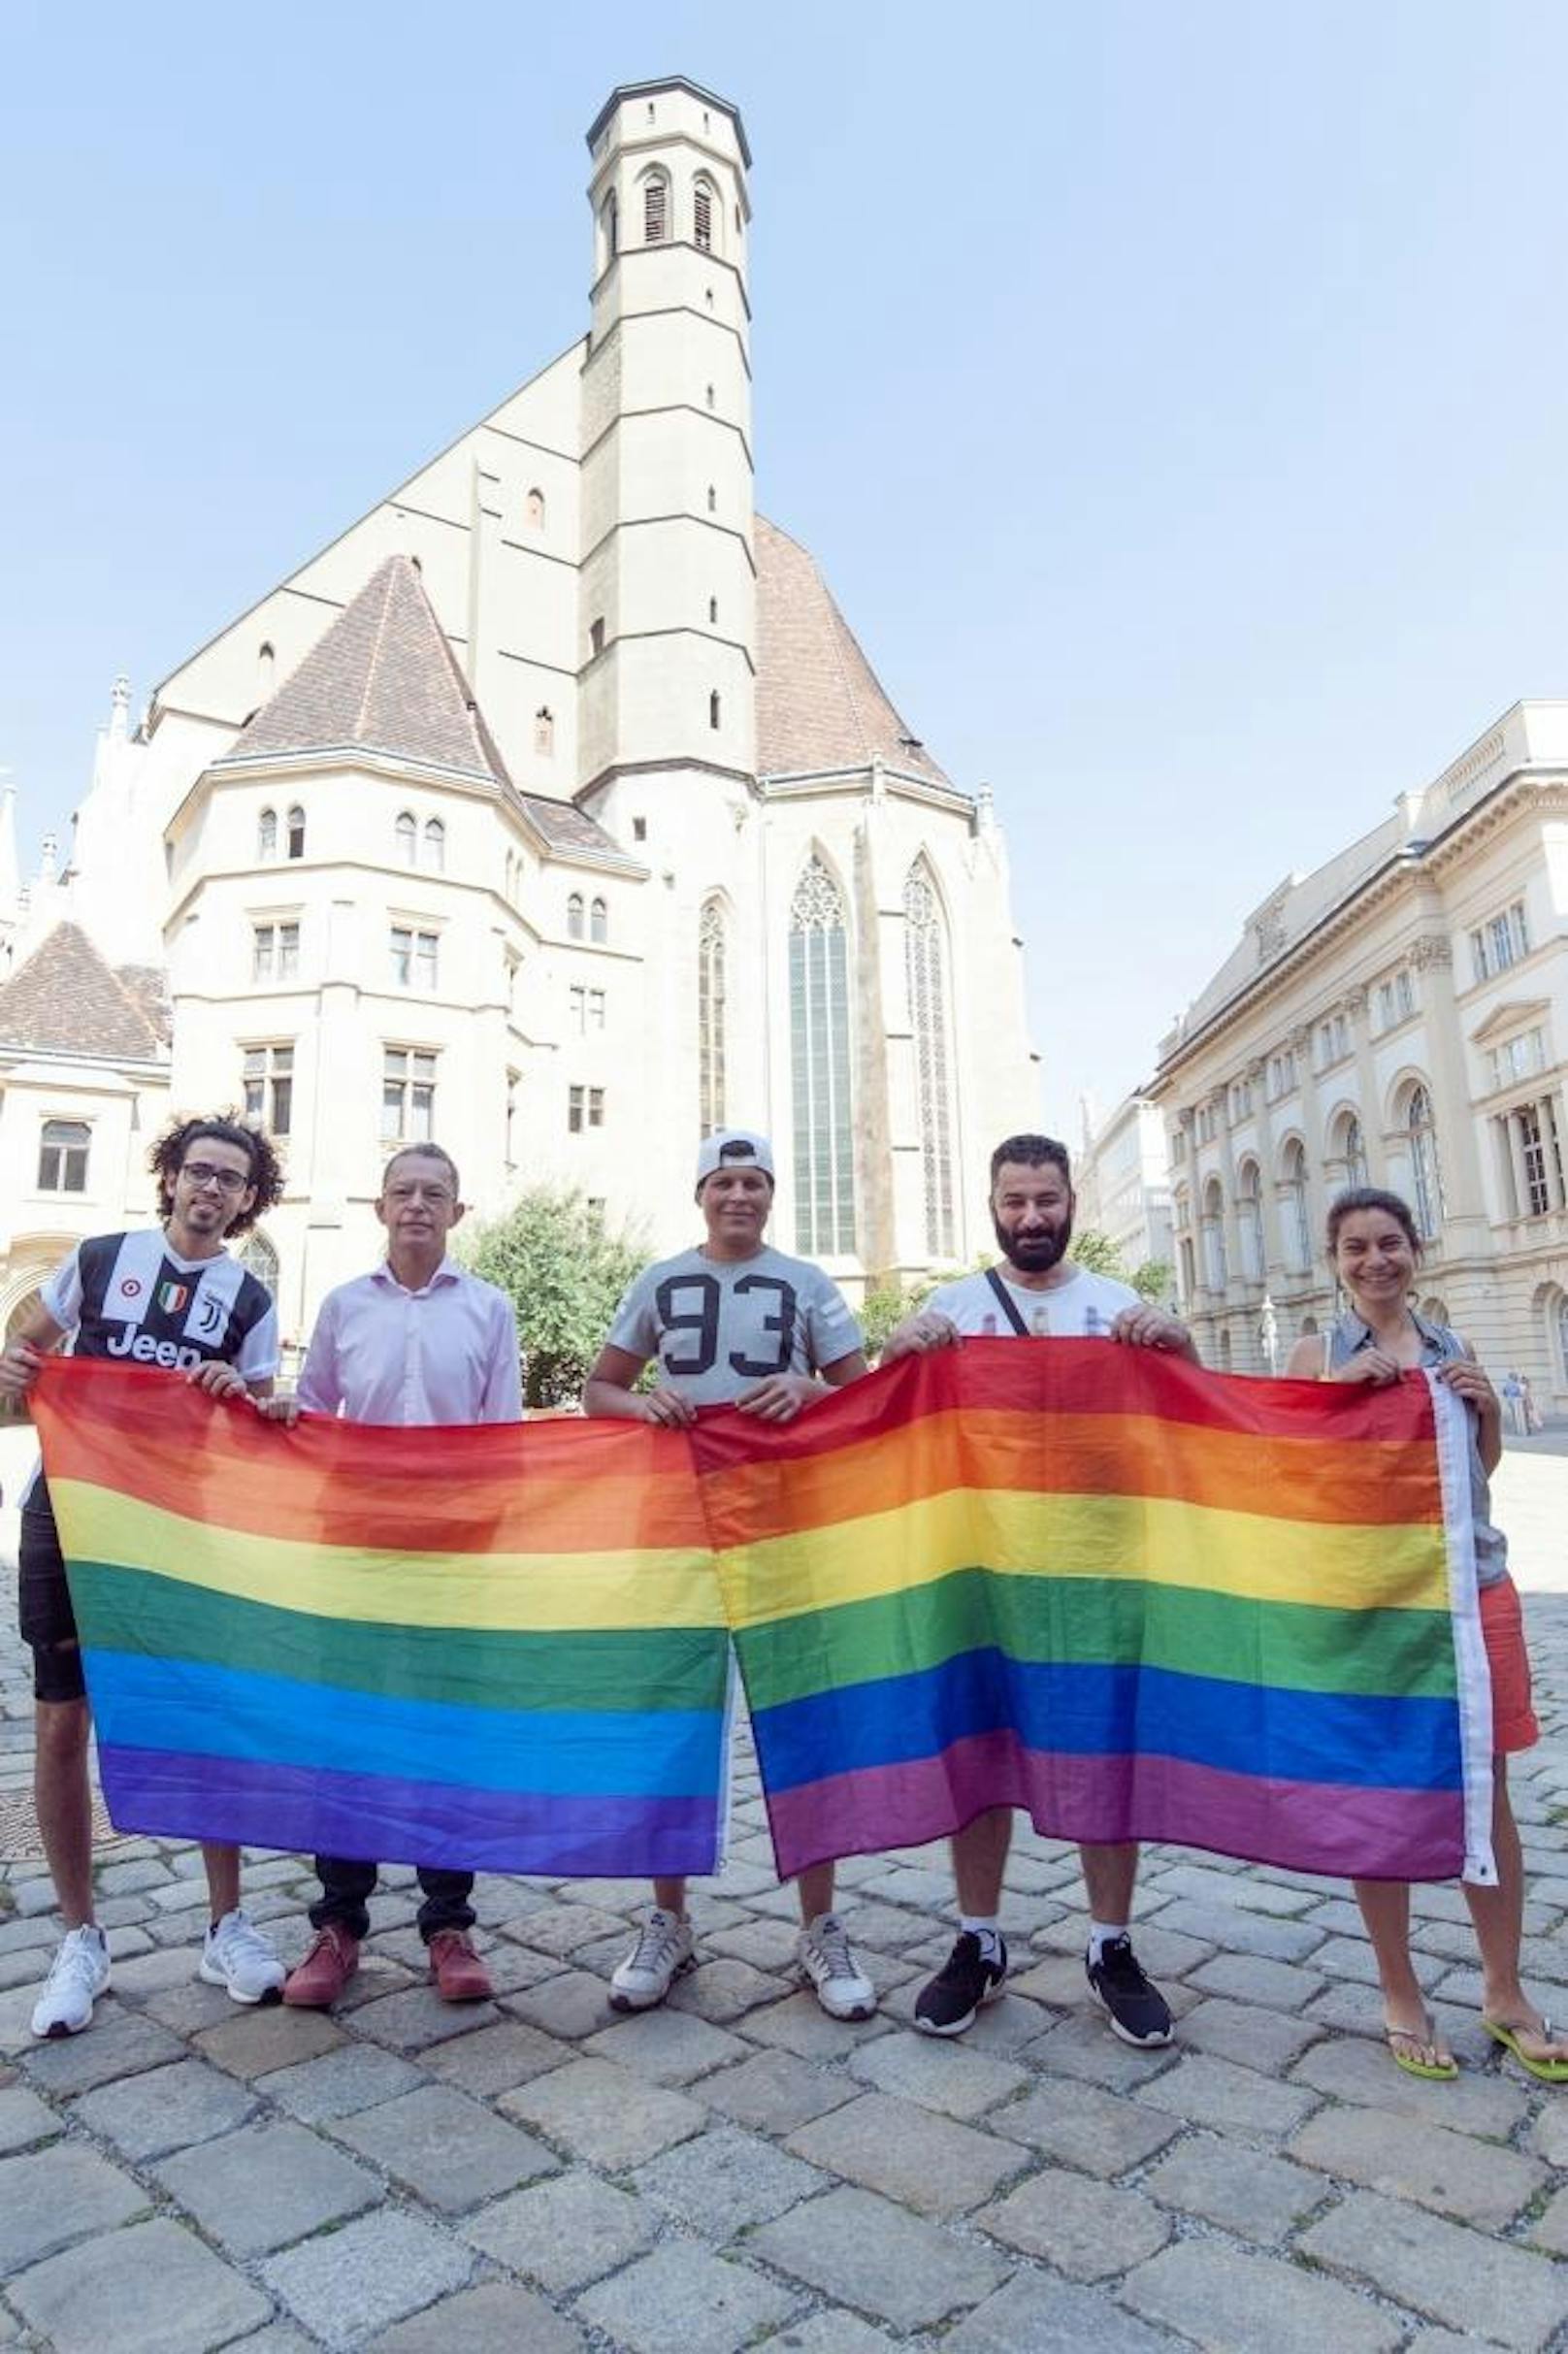 Beim Protest für die Rechte eines Homosexuellen durfte selbstverständlich auch die "Regenbogenfahne" nicht fehlen.